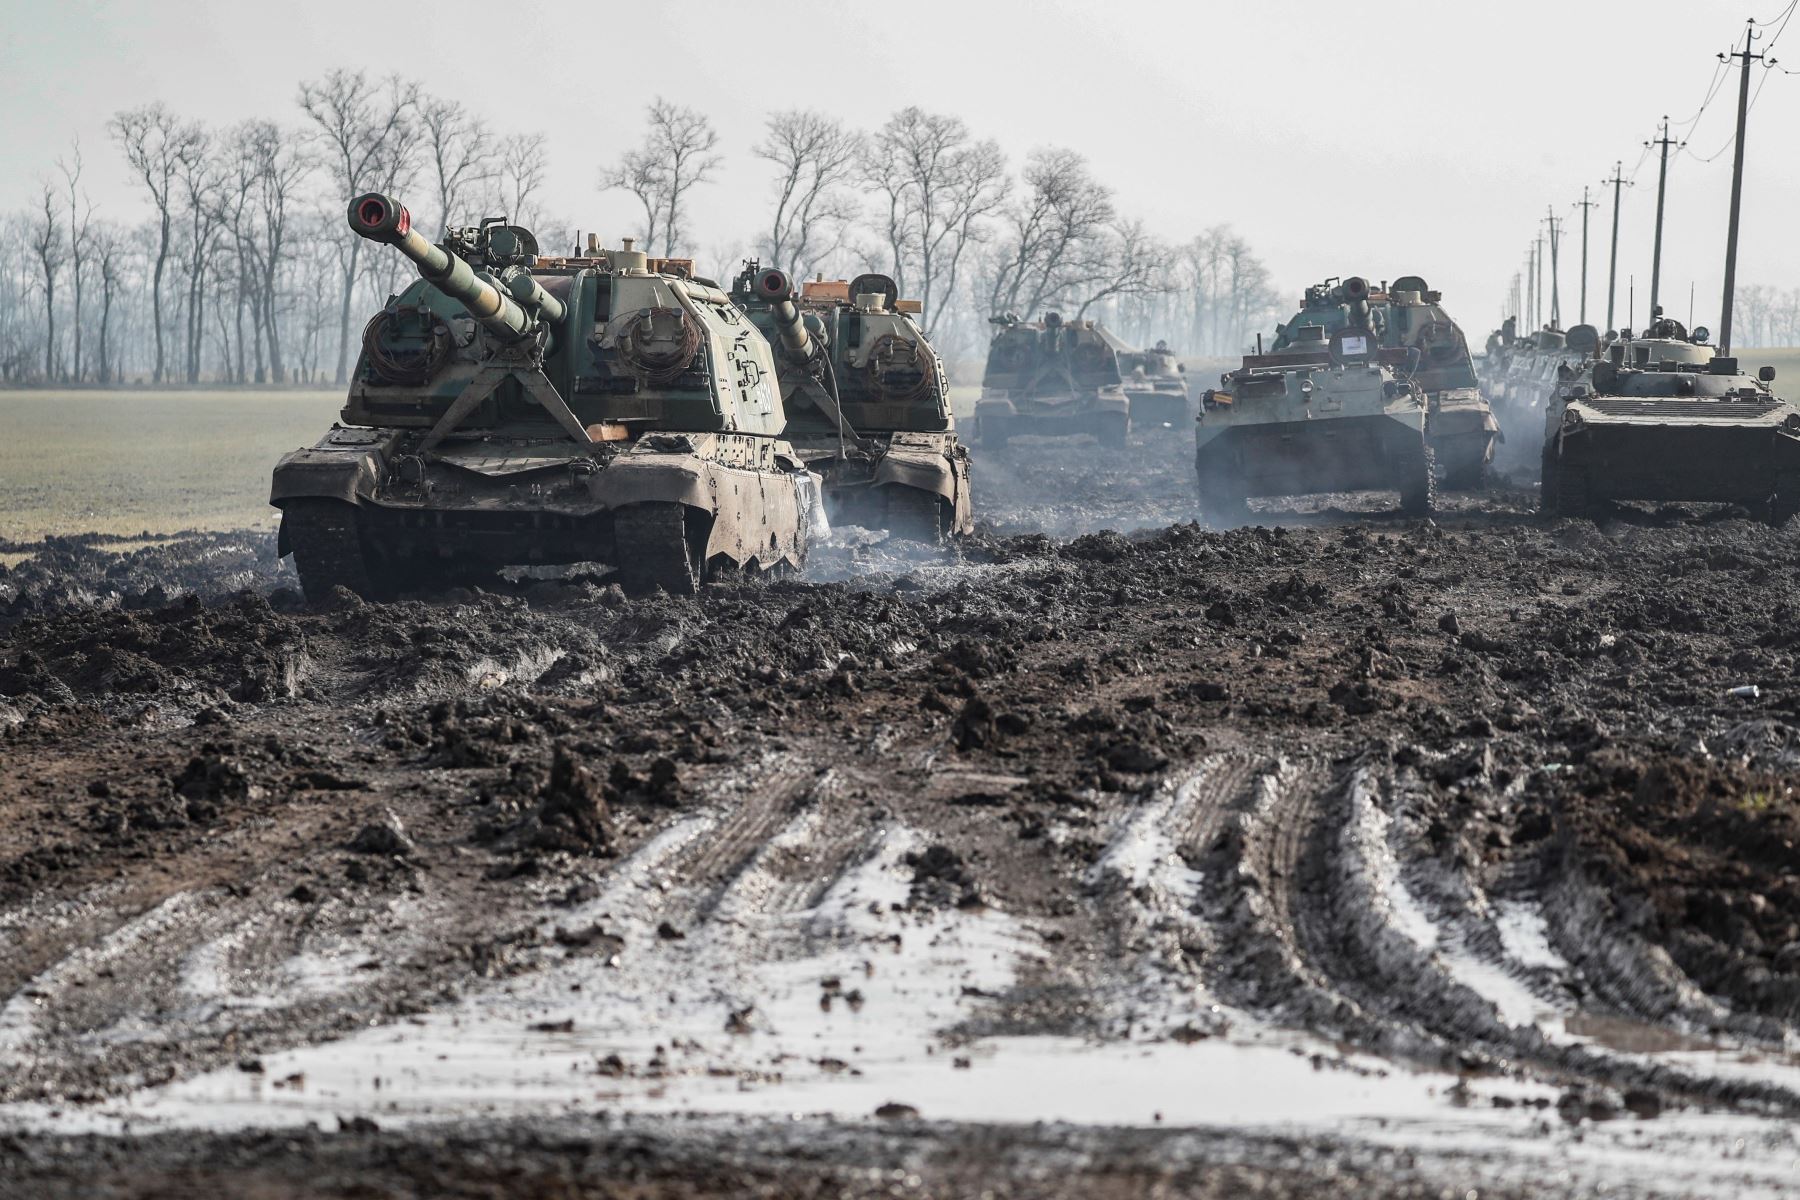 Vehículos blindados rusos estacionados en la carretera en la región de Rostov, Rusia, el 22 de febrero del 2022. Foto: Efe/Yuri Kochetkov.